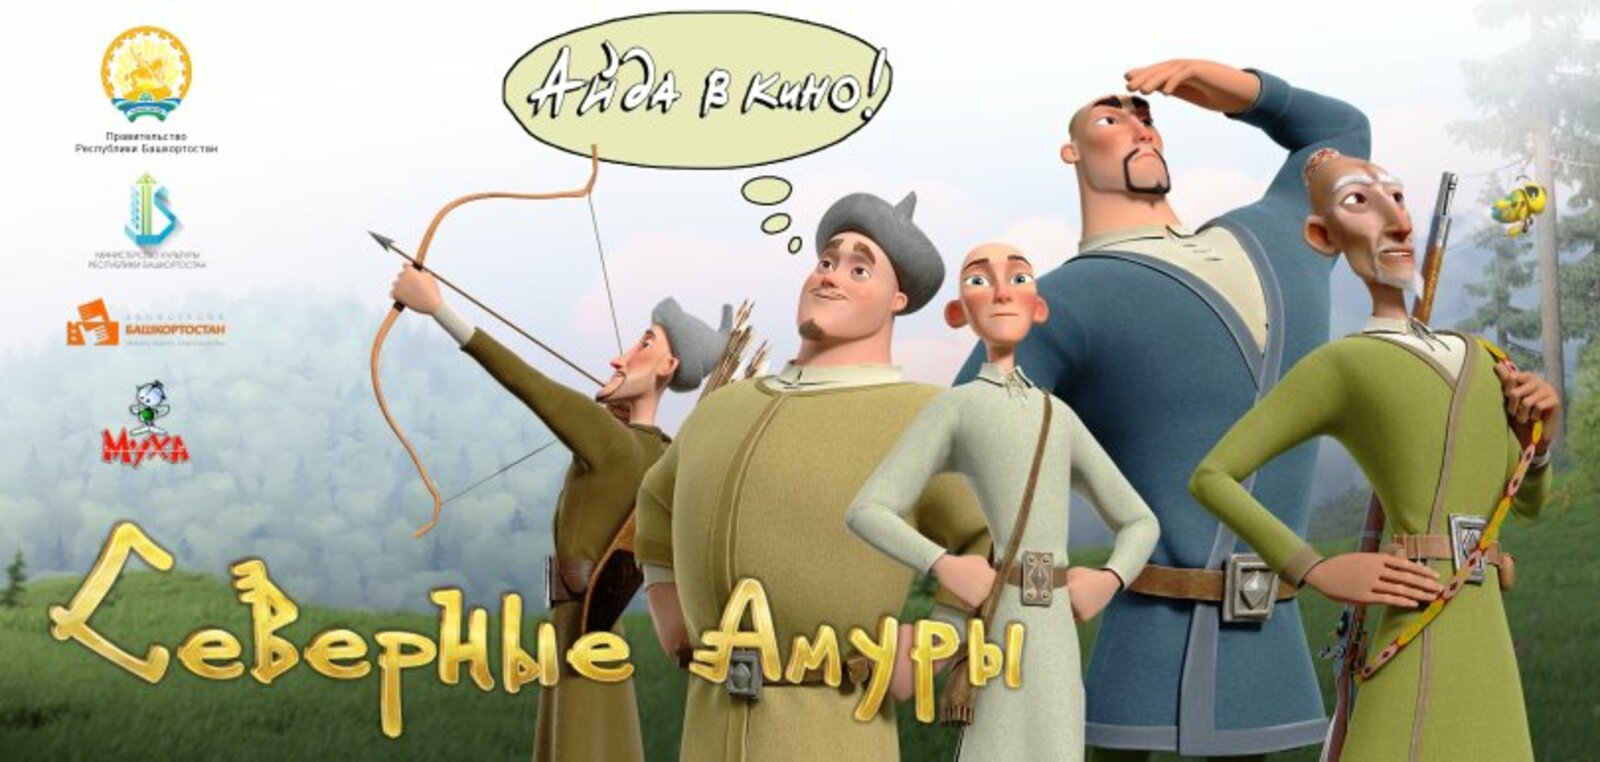 В конце августа в Башкирии стартует показ мультфильма “Северные Амуры”